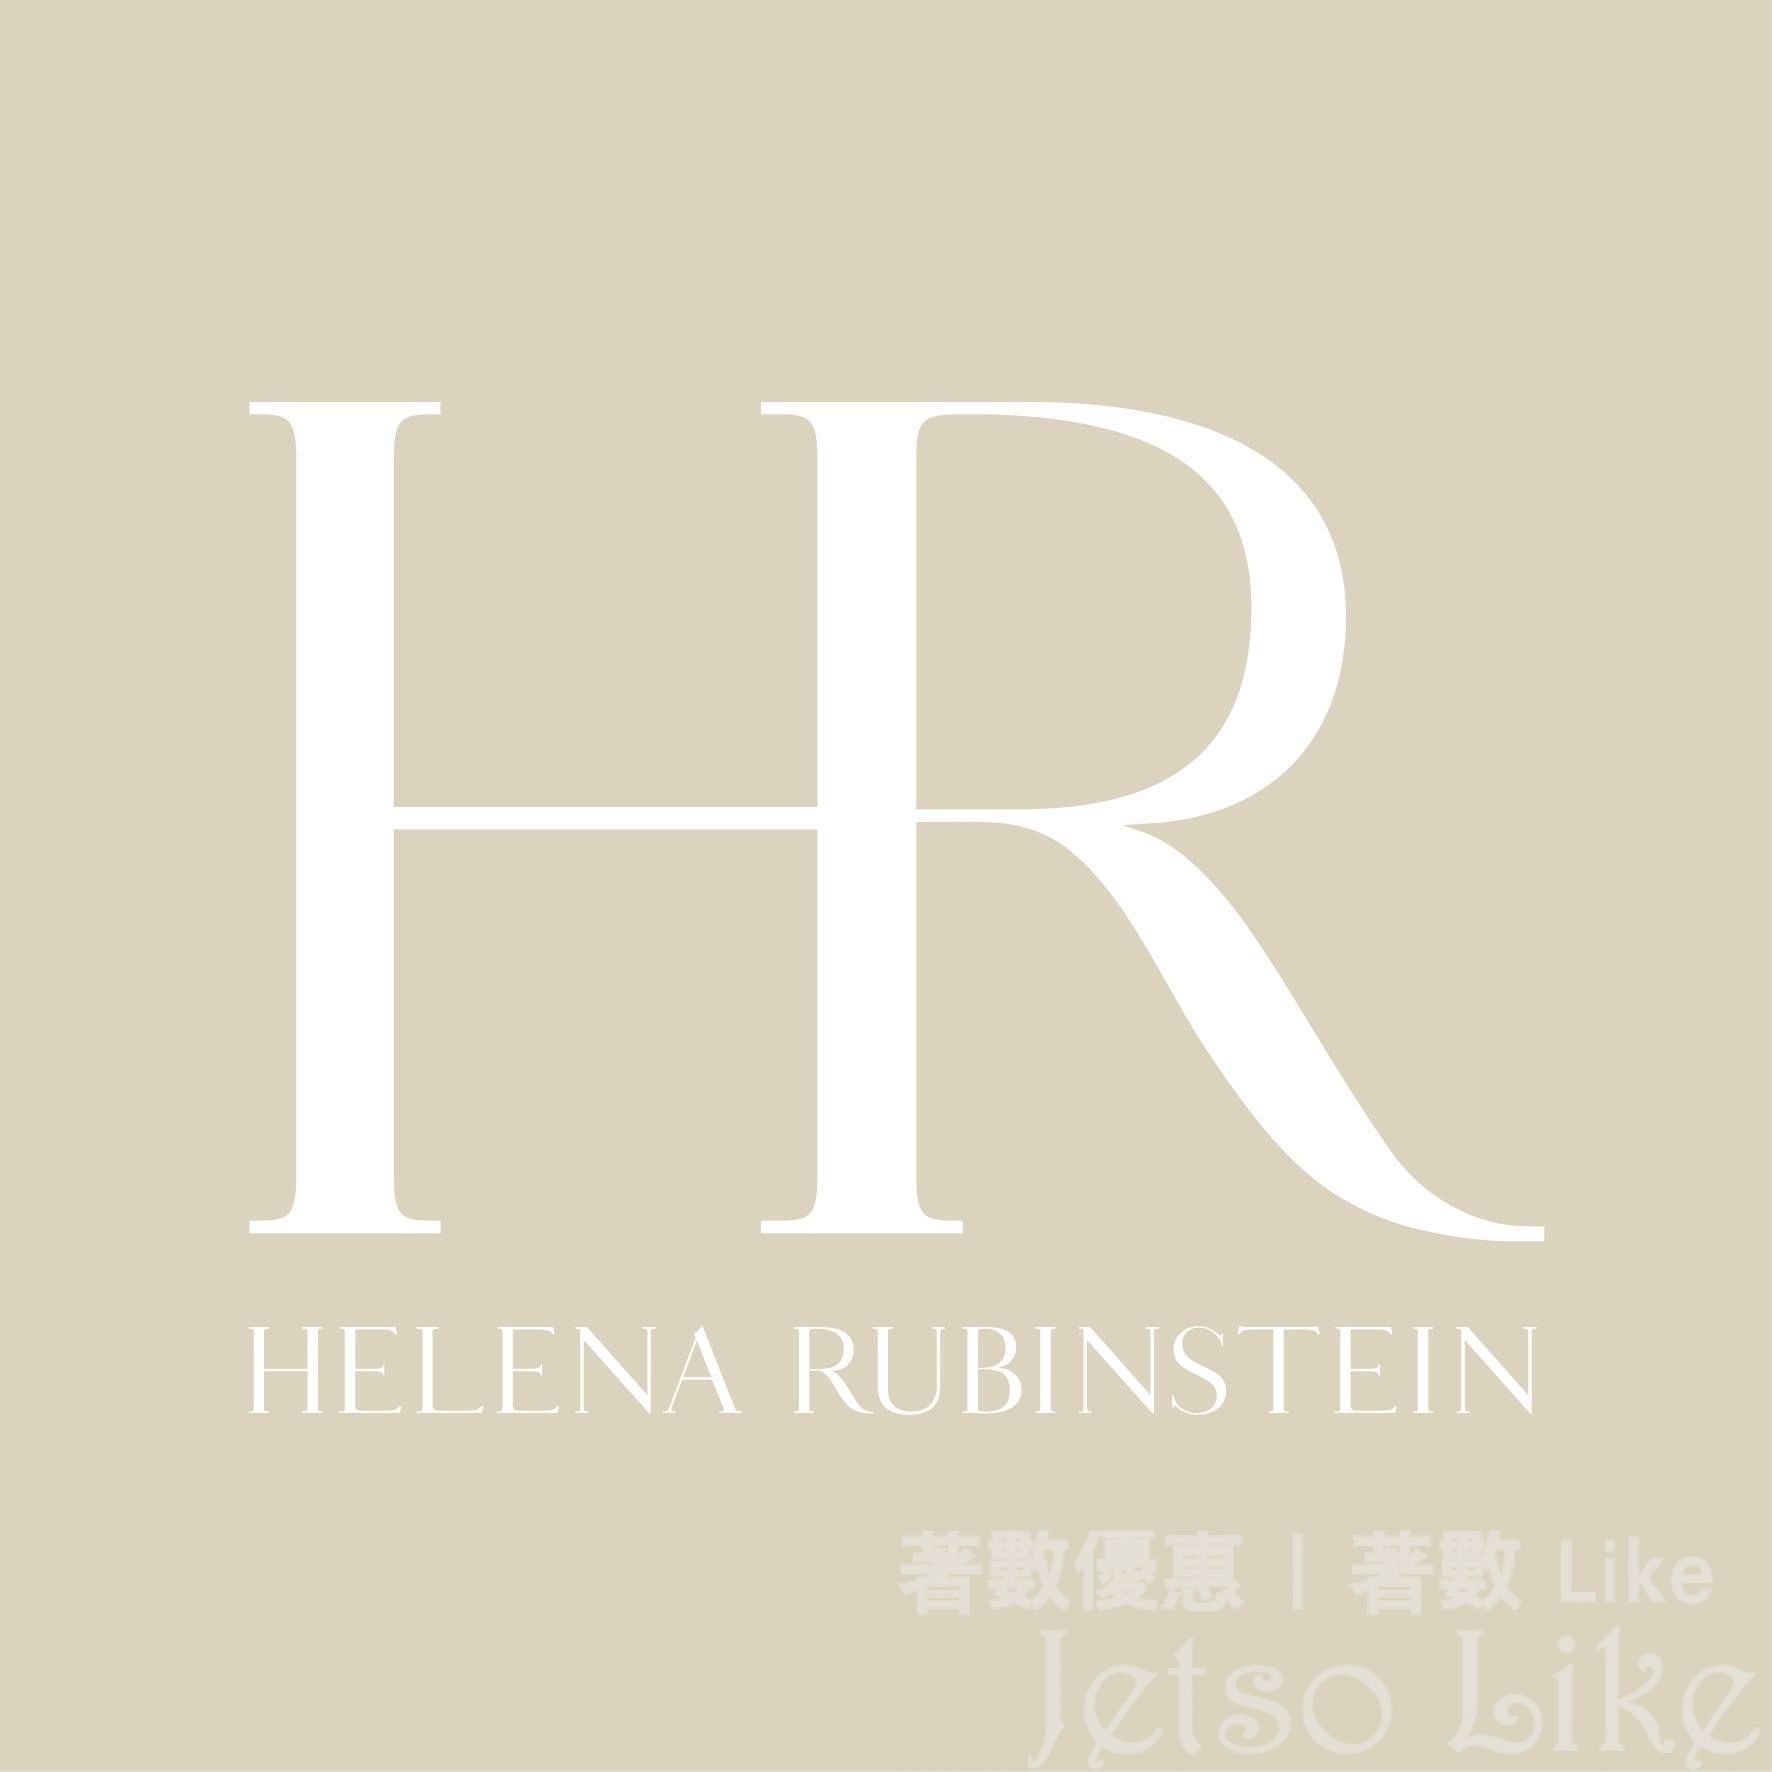 Helena Rubinstein 優惠碼